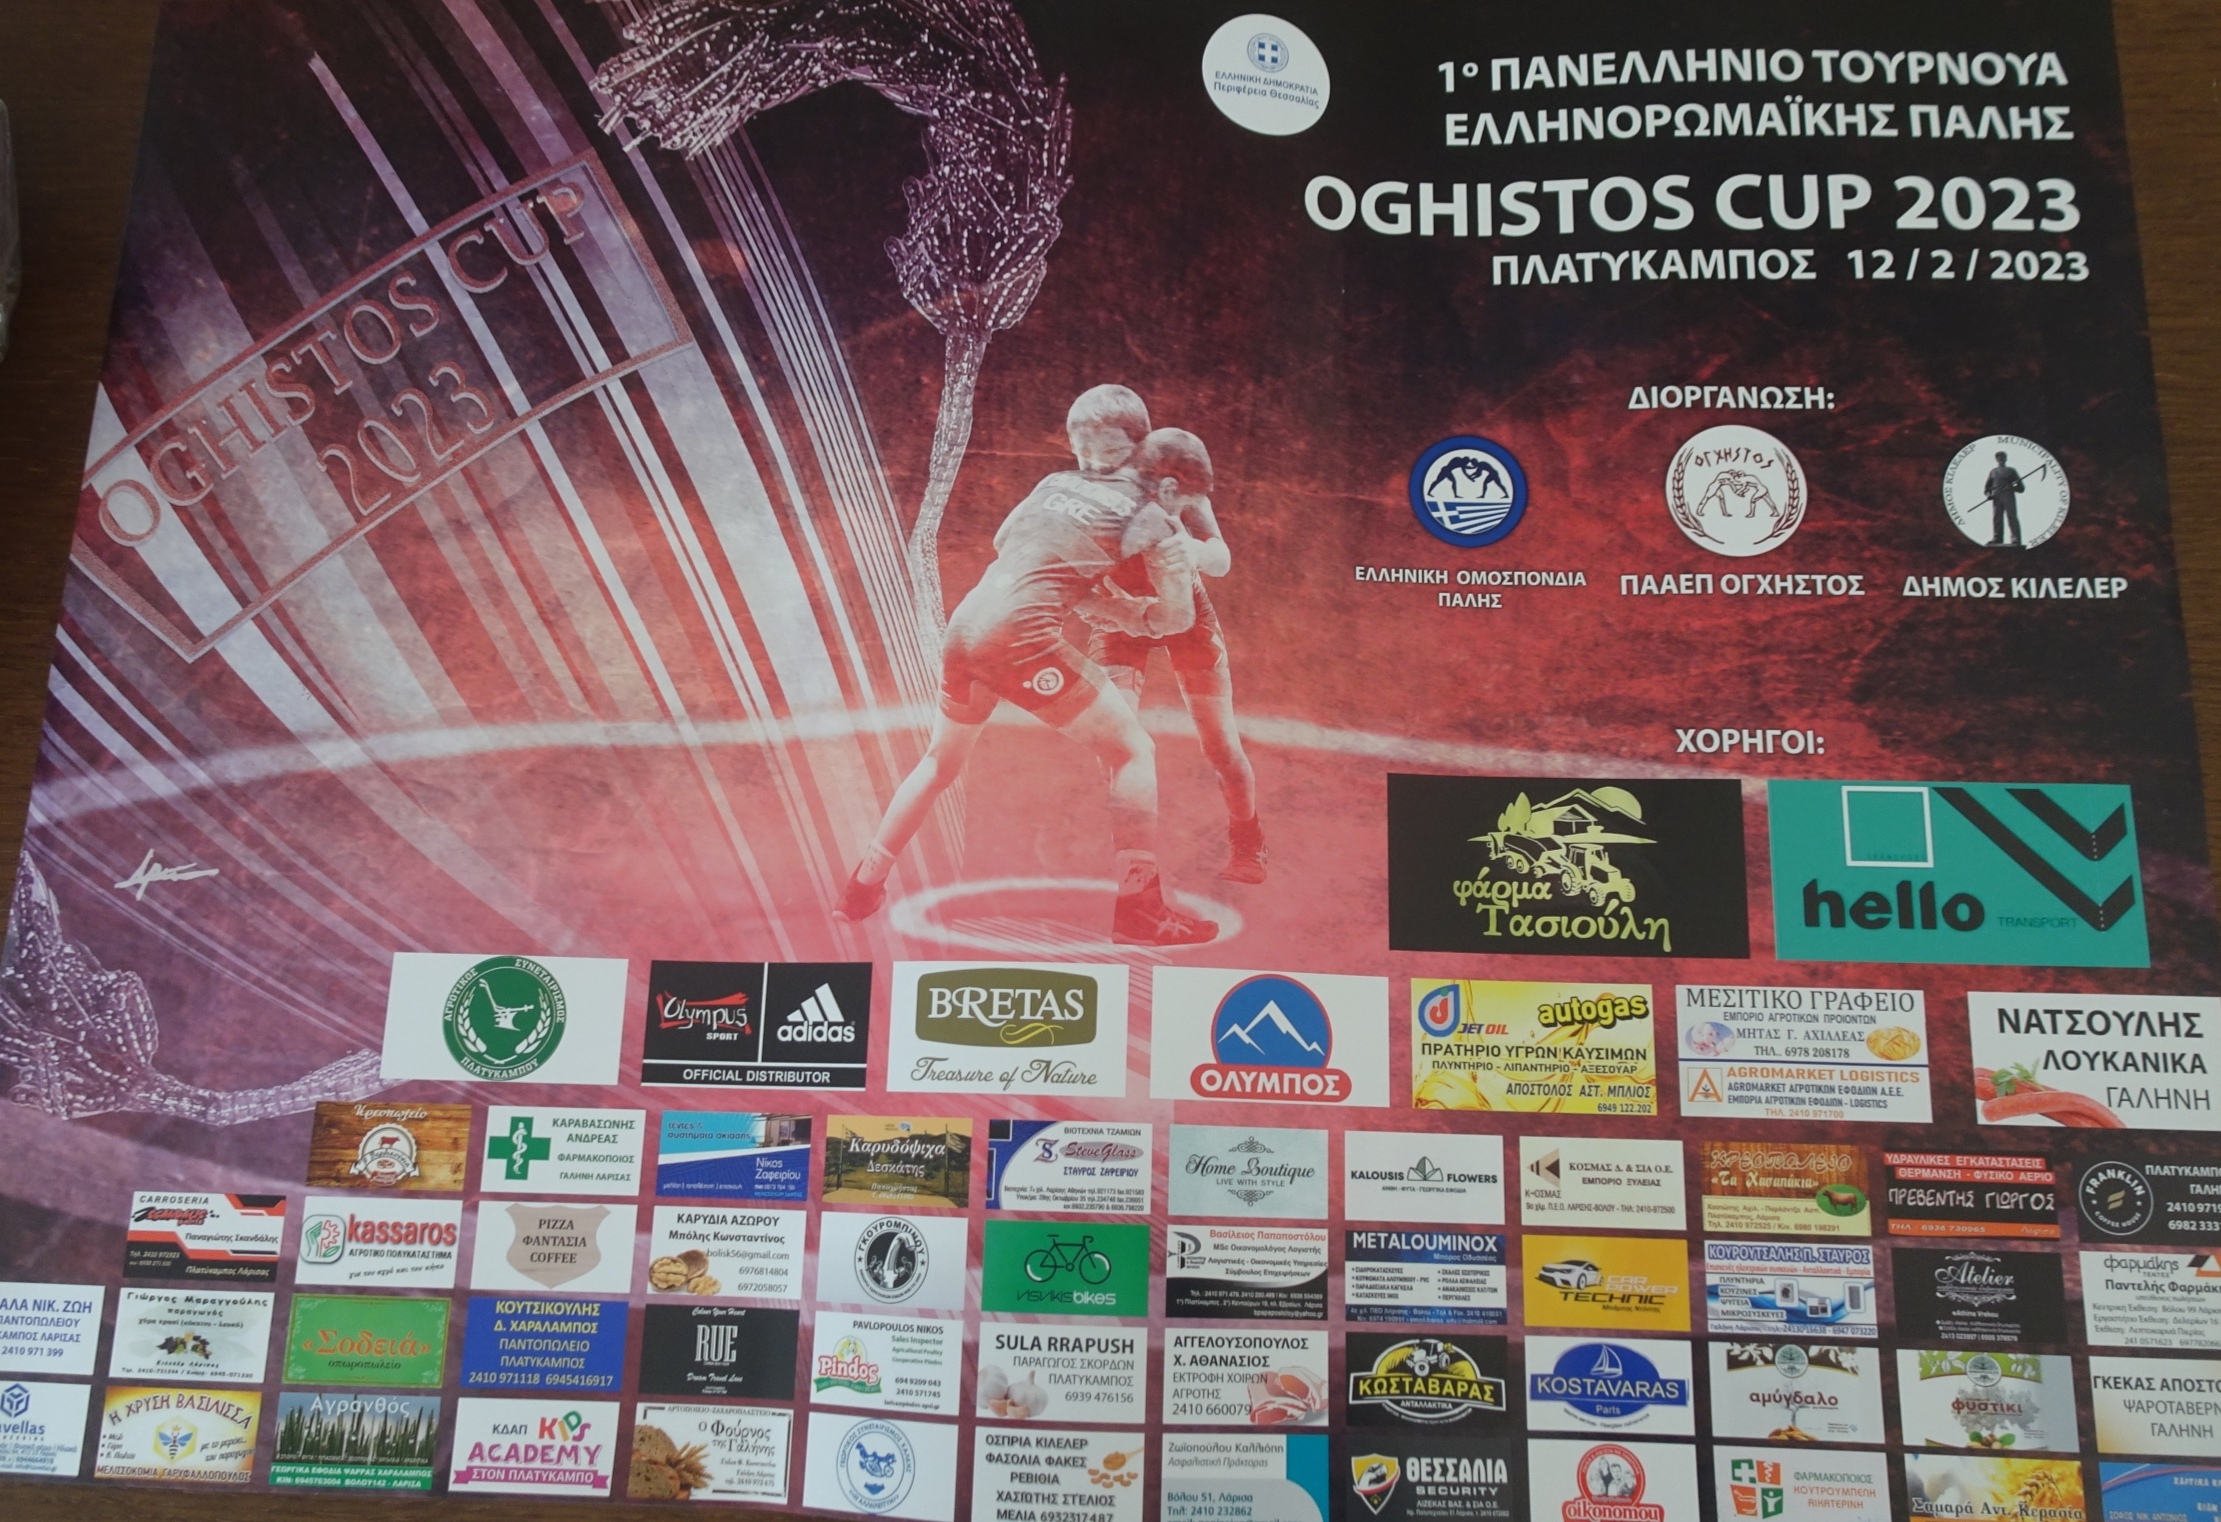 Το 1ο Πανελλήνιο Τουρνουά Ελληνορωμαϊκής Πάλης Oghistos Cup 2023 στον Πλατύκαμπο Λάρισας